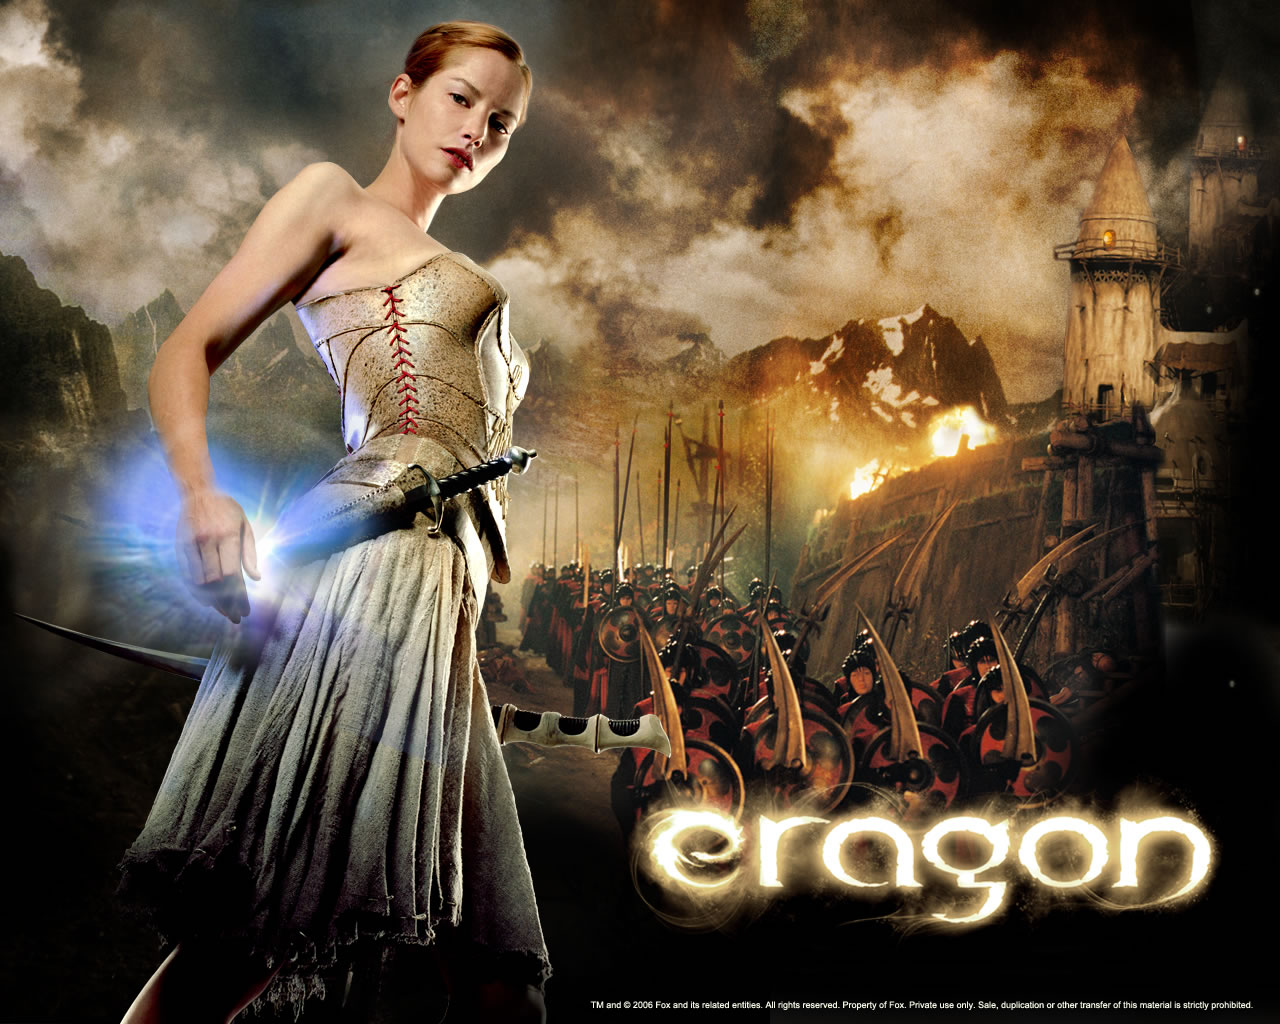 Fond d'ecran Eragon